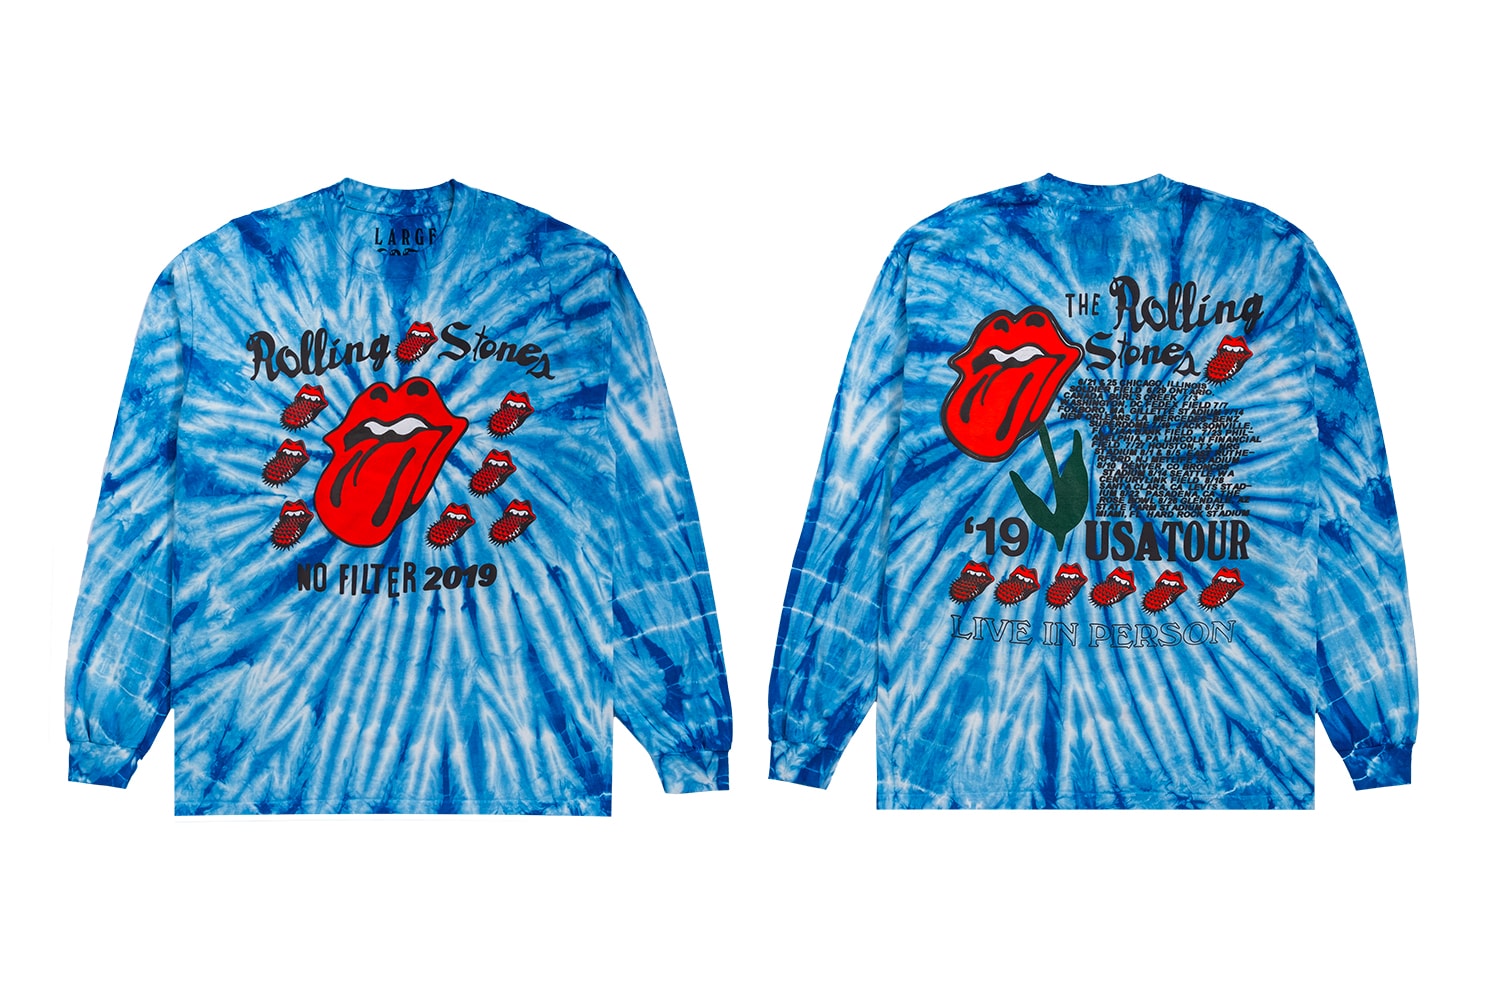 ローリングストーンズ カクタス プラント フリー マーケット The Rolling Stones Cactus Plant Flea Market No Filter US Tour Capsule Crewneck T shirt